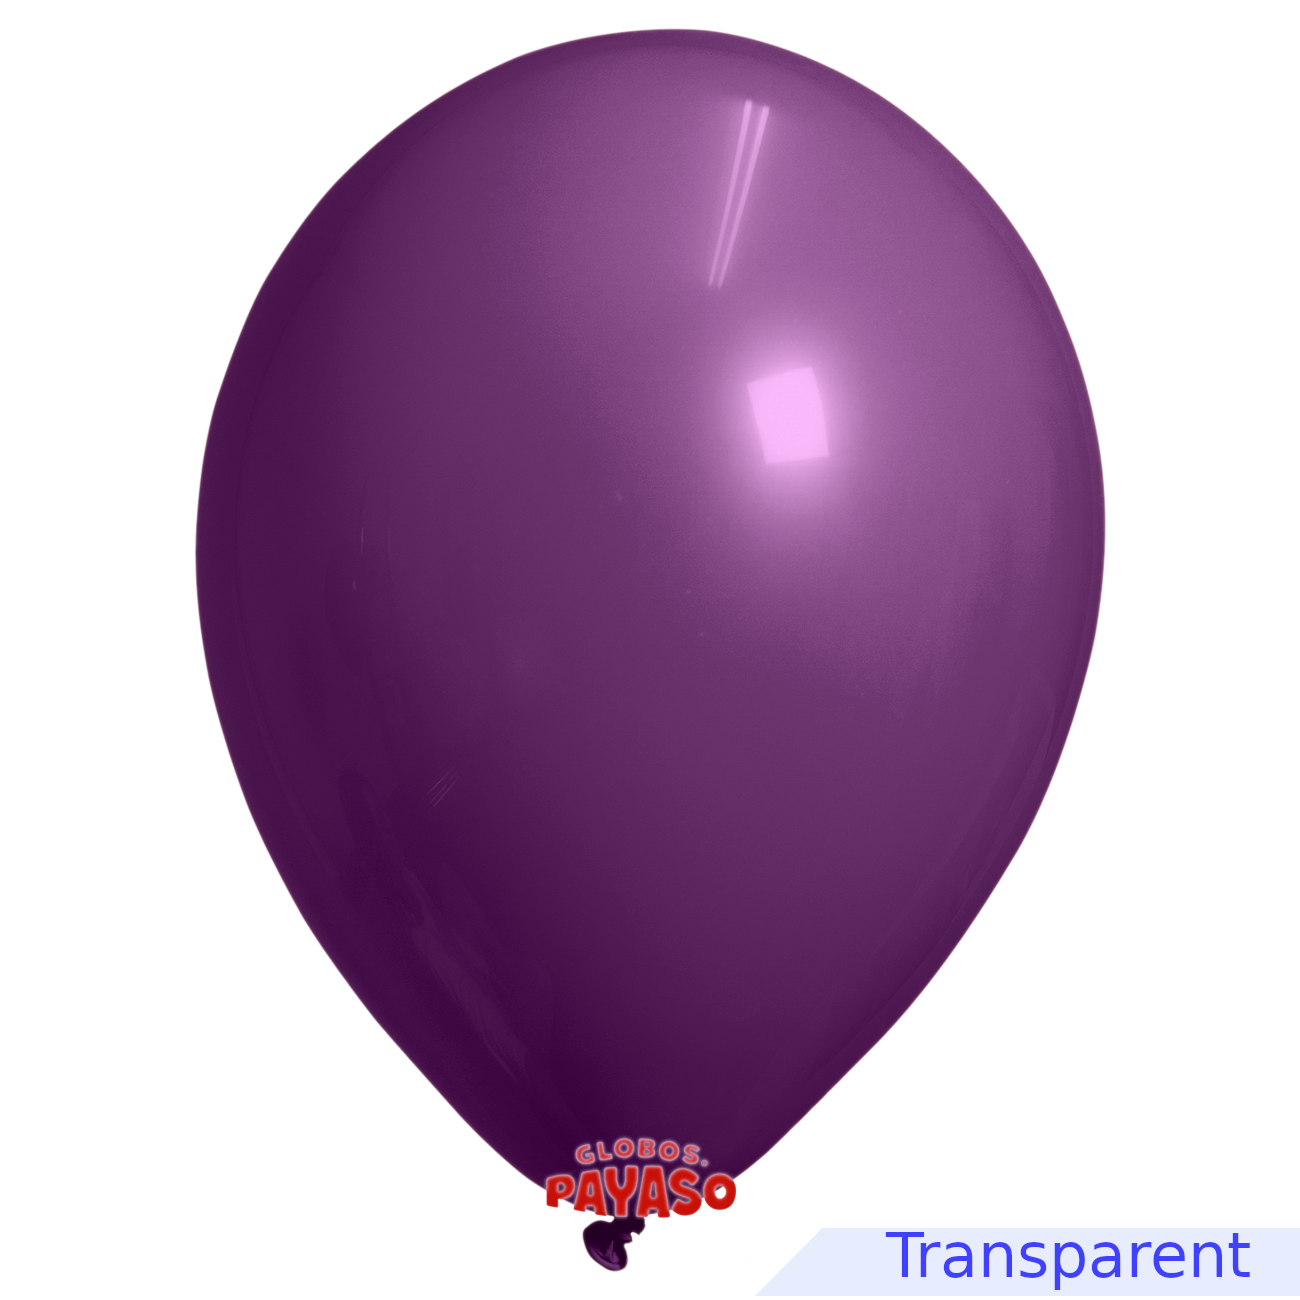 Globos Payaso / Unique 5" Dark Violet Translucid Decorator Balloon